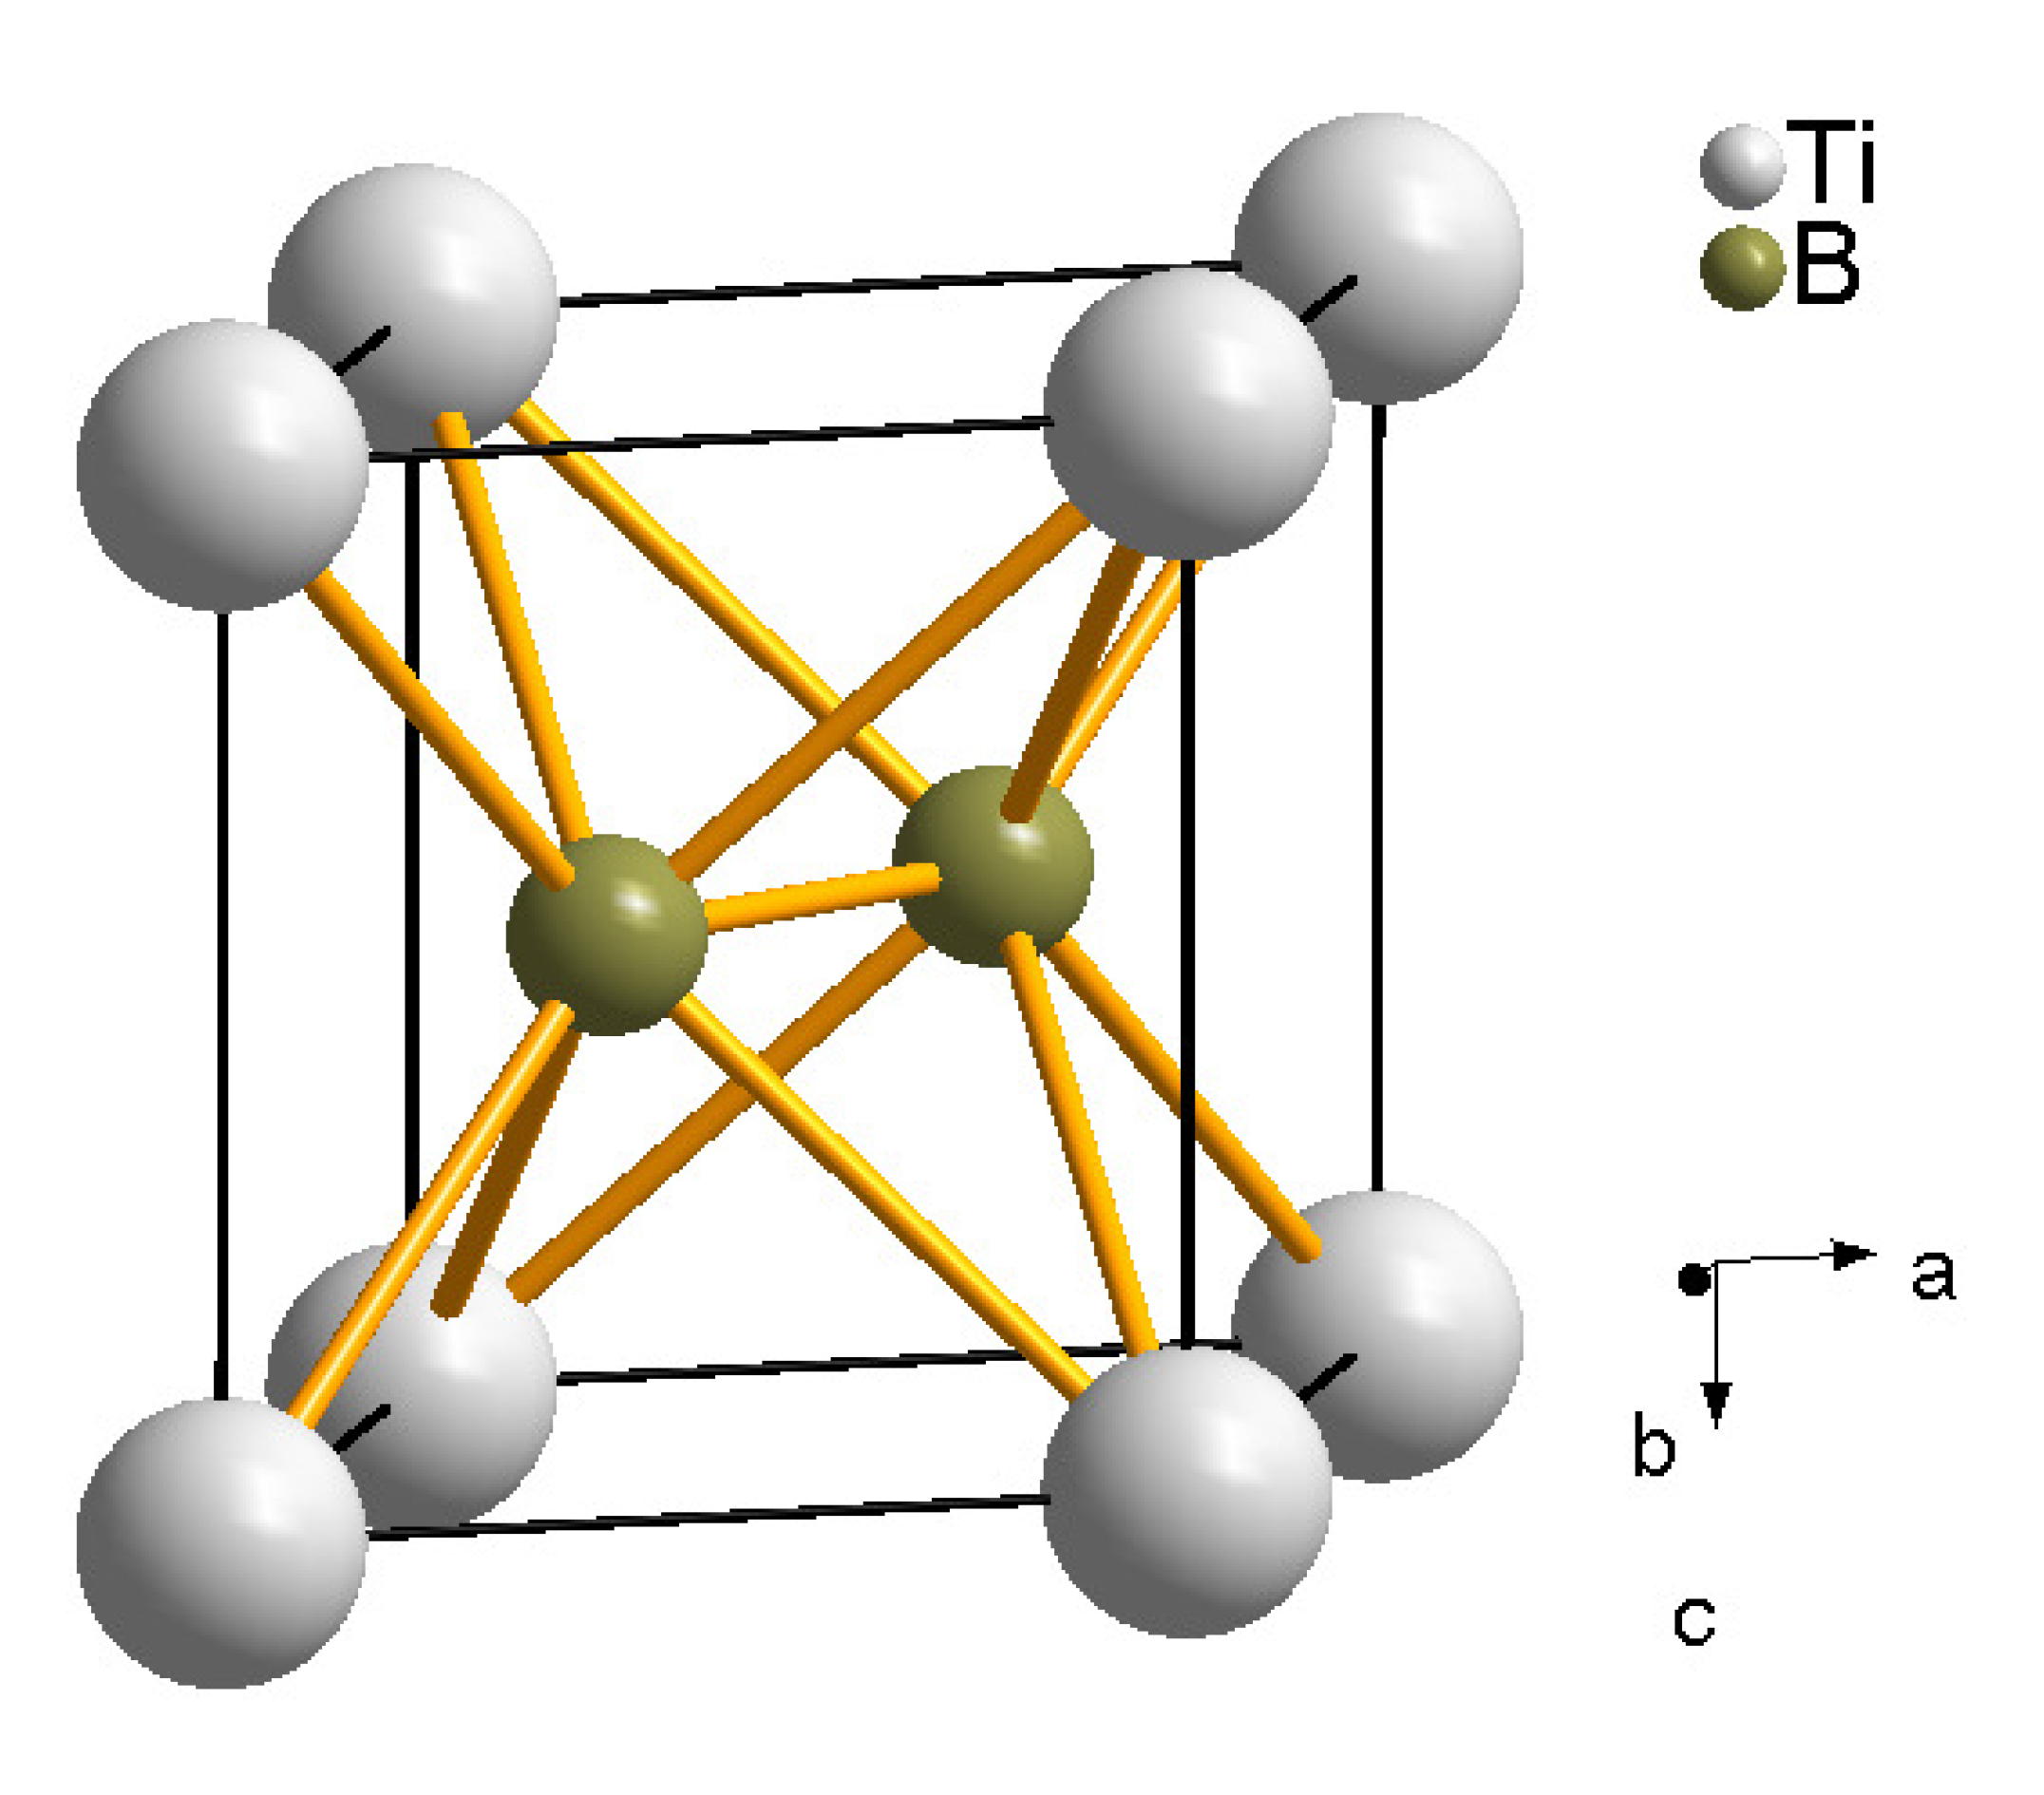 Sio 2 hf. Alb2 кристаллическая решетка. Арсенопирит кристаллическая структура. Бориды титана решетка кристаллическая решетка. Alb2.